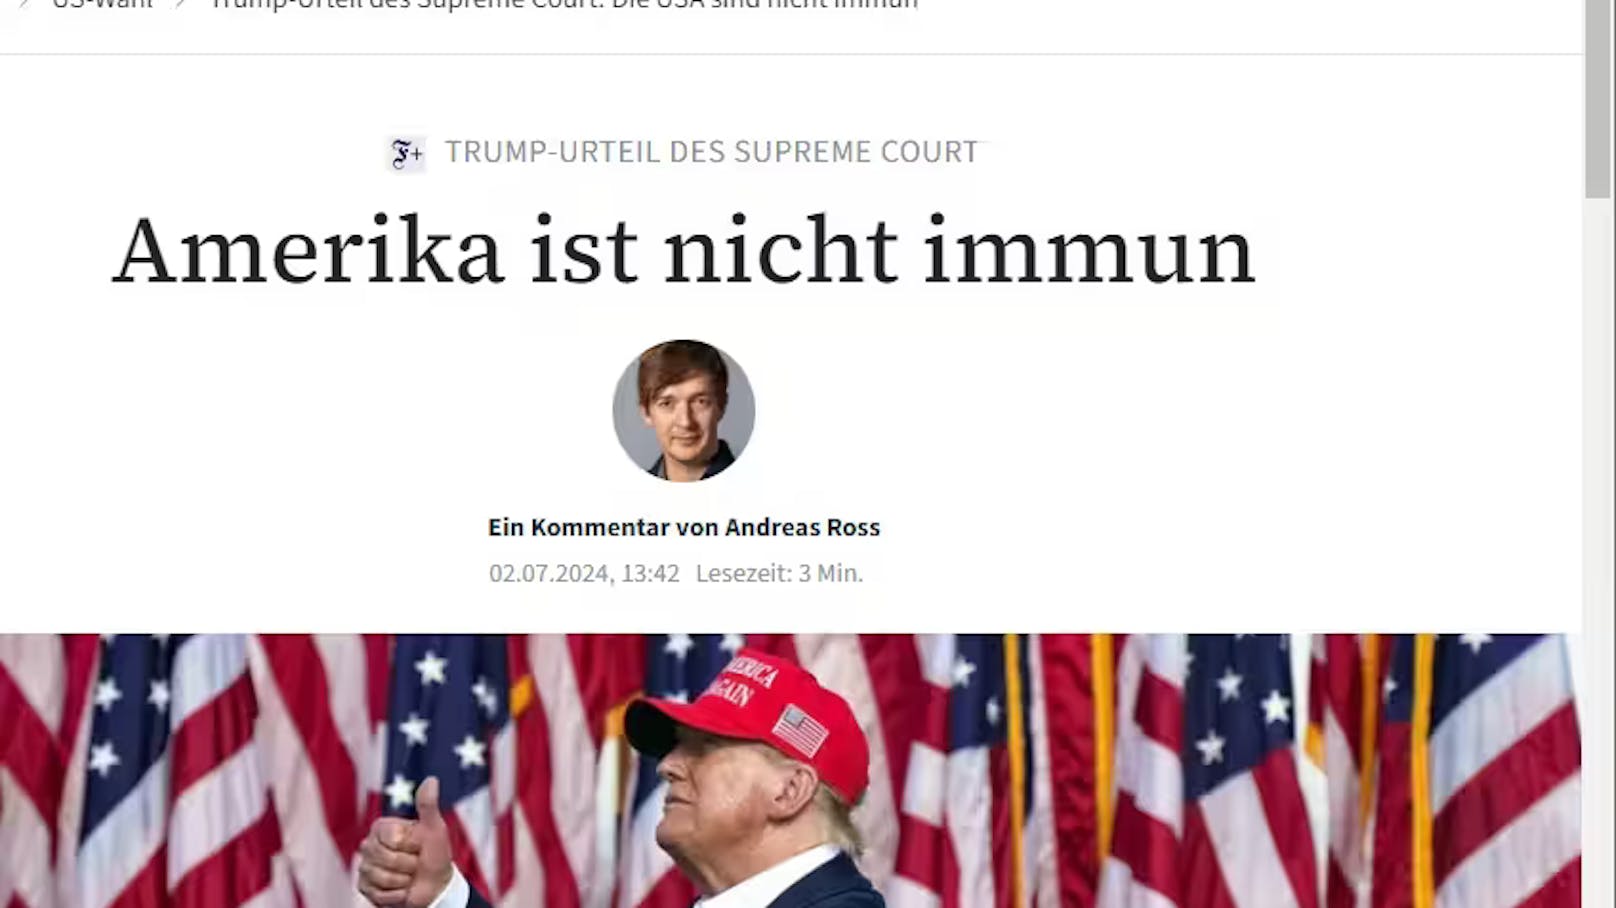 Frankfurter Allgemeine: "Urteil für die Ewigkeit"